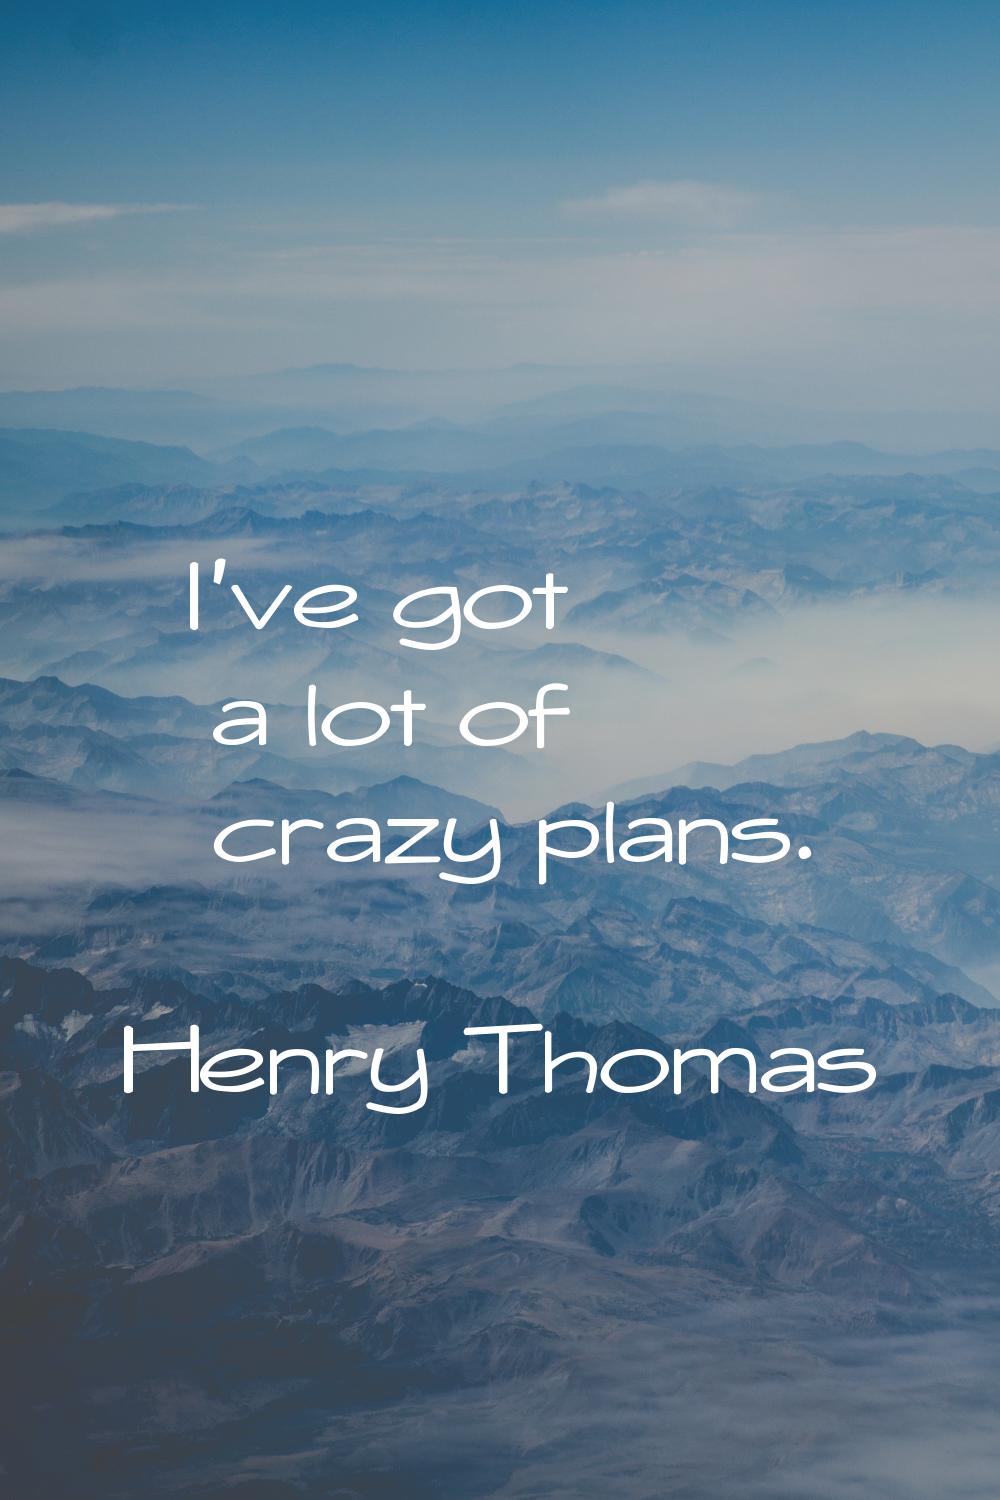 I've got a lot of crazy plans.